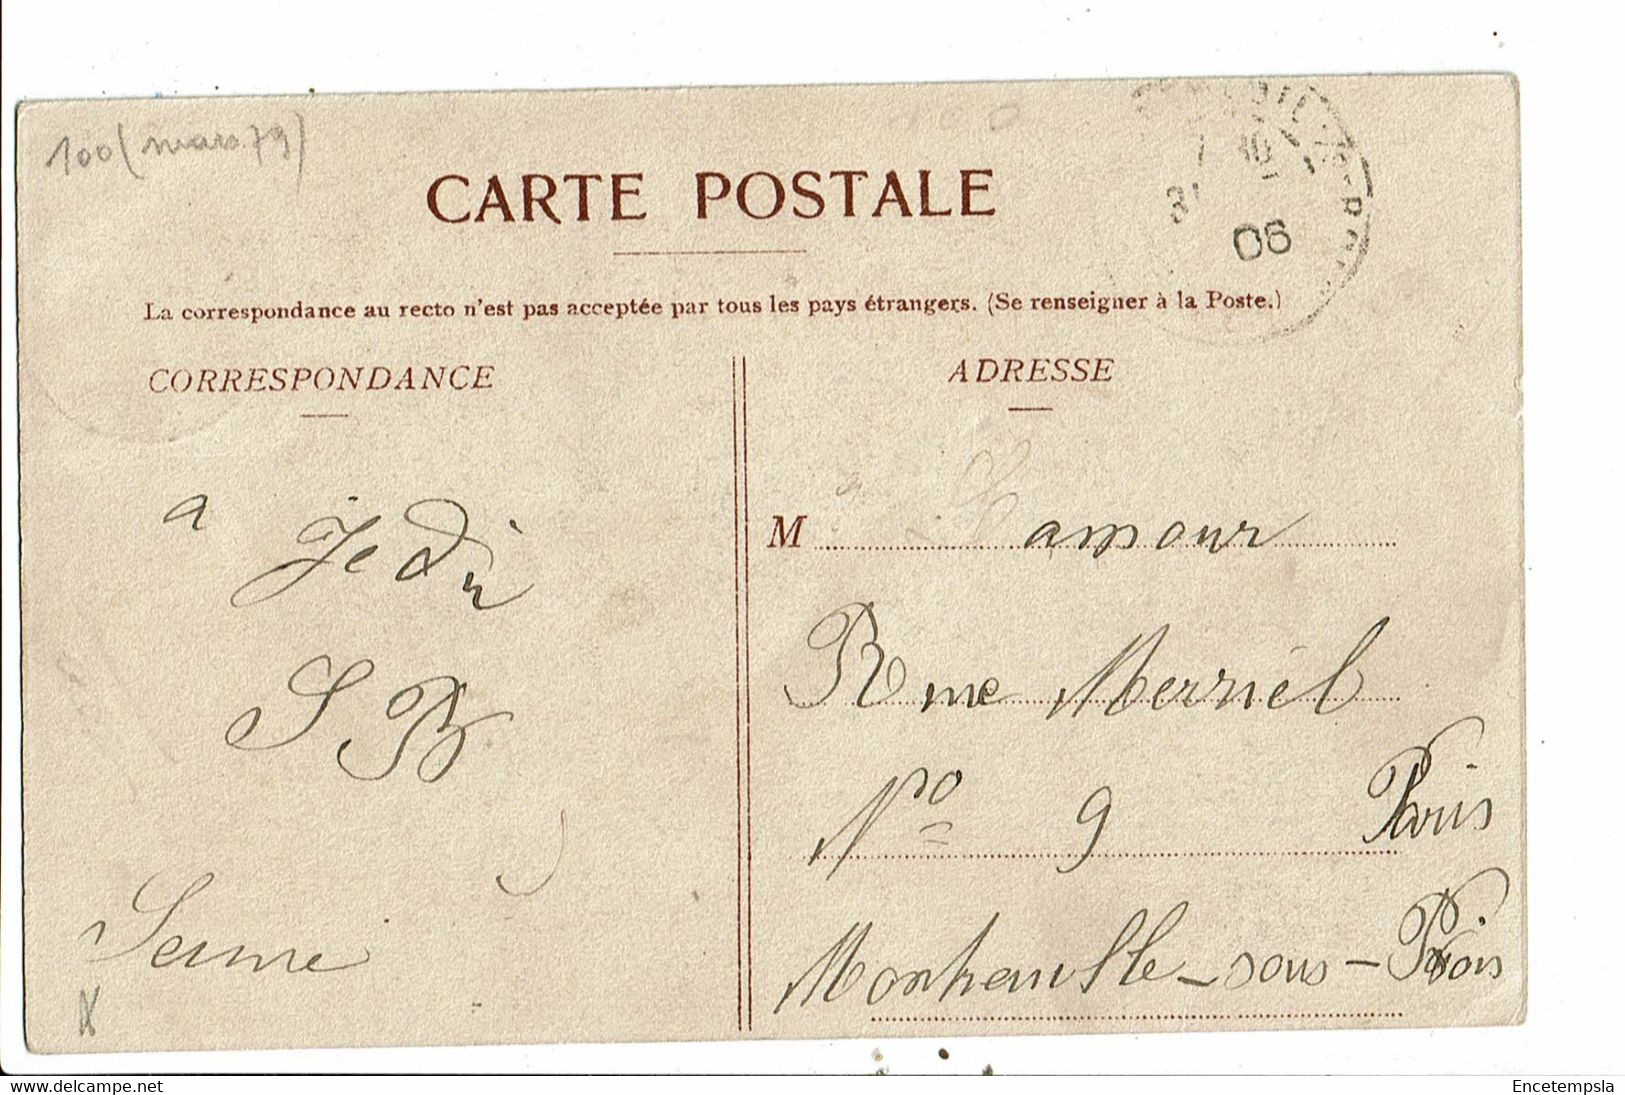 CPA Carte Postale-Belgique- Honnelles-Roisin Le Caillou Qui Bique-L'escalier 1906 VM30877 - Honnelles